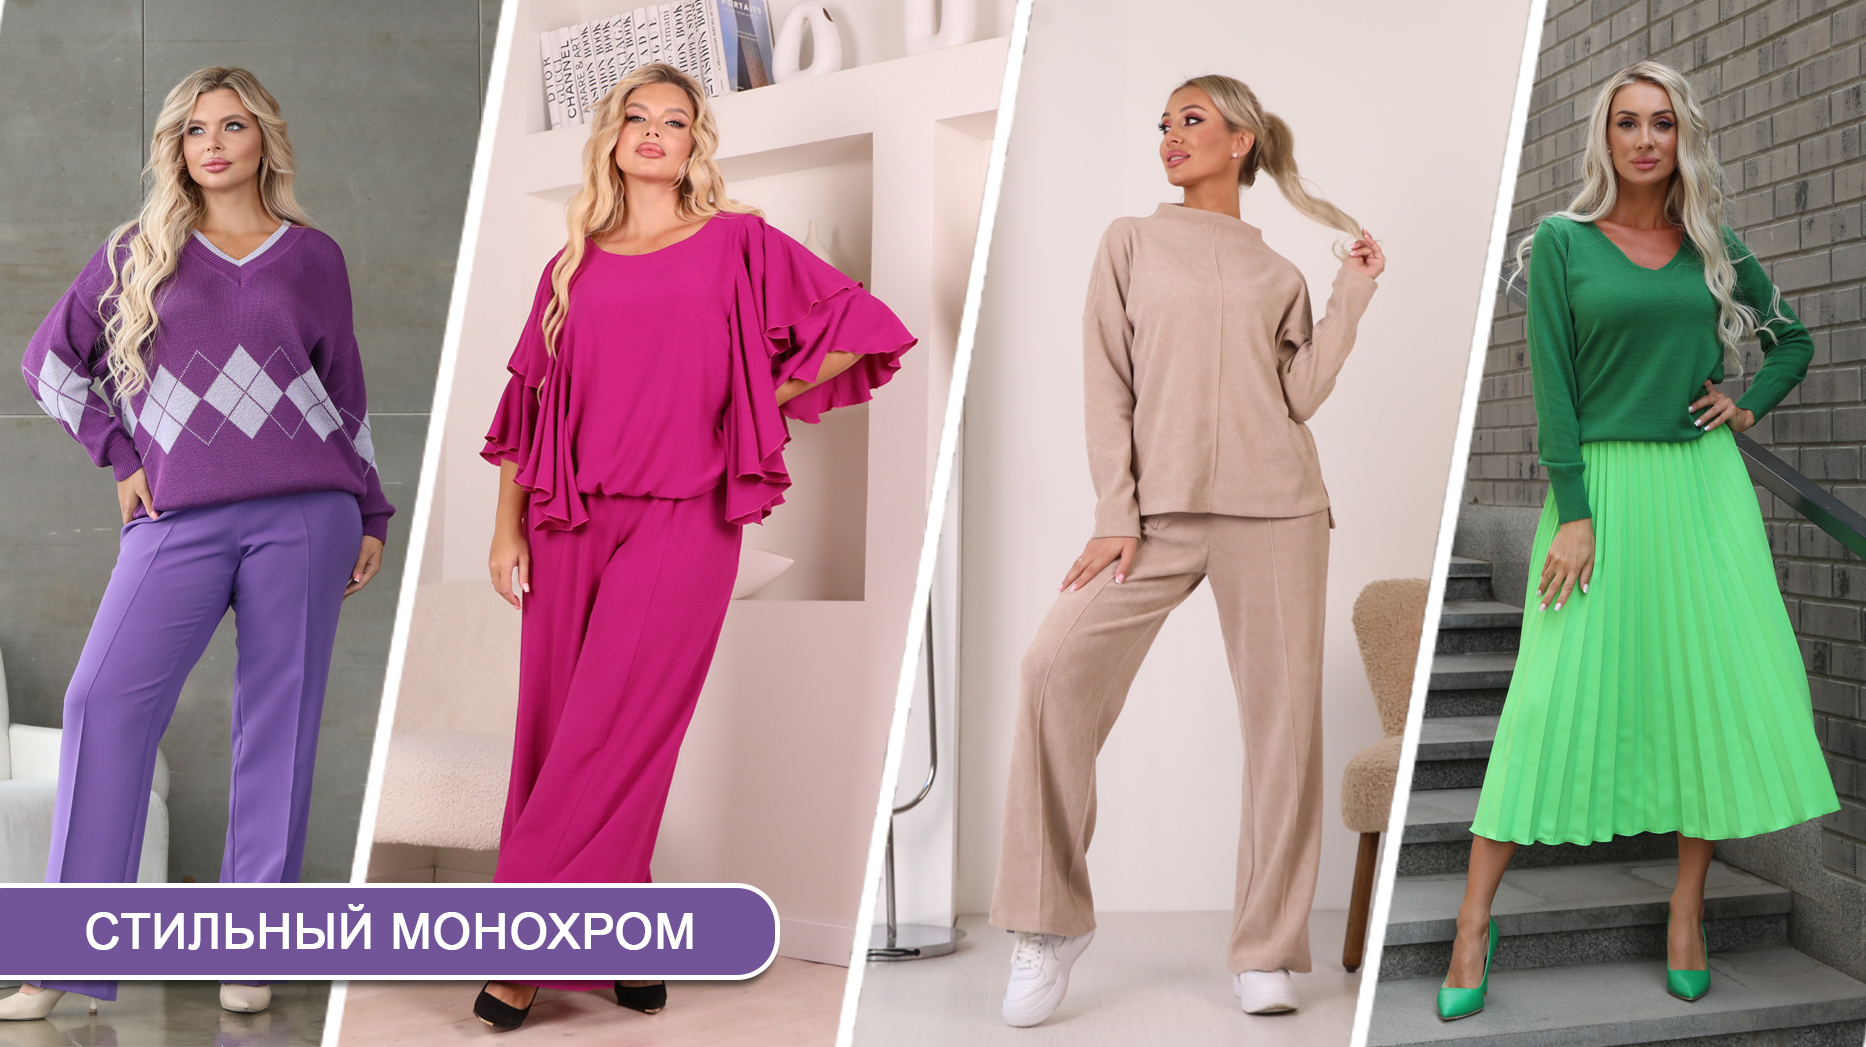 Юбки для женщин купить в интернет-магазине, белорусские женские юбки